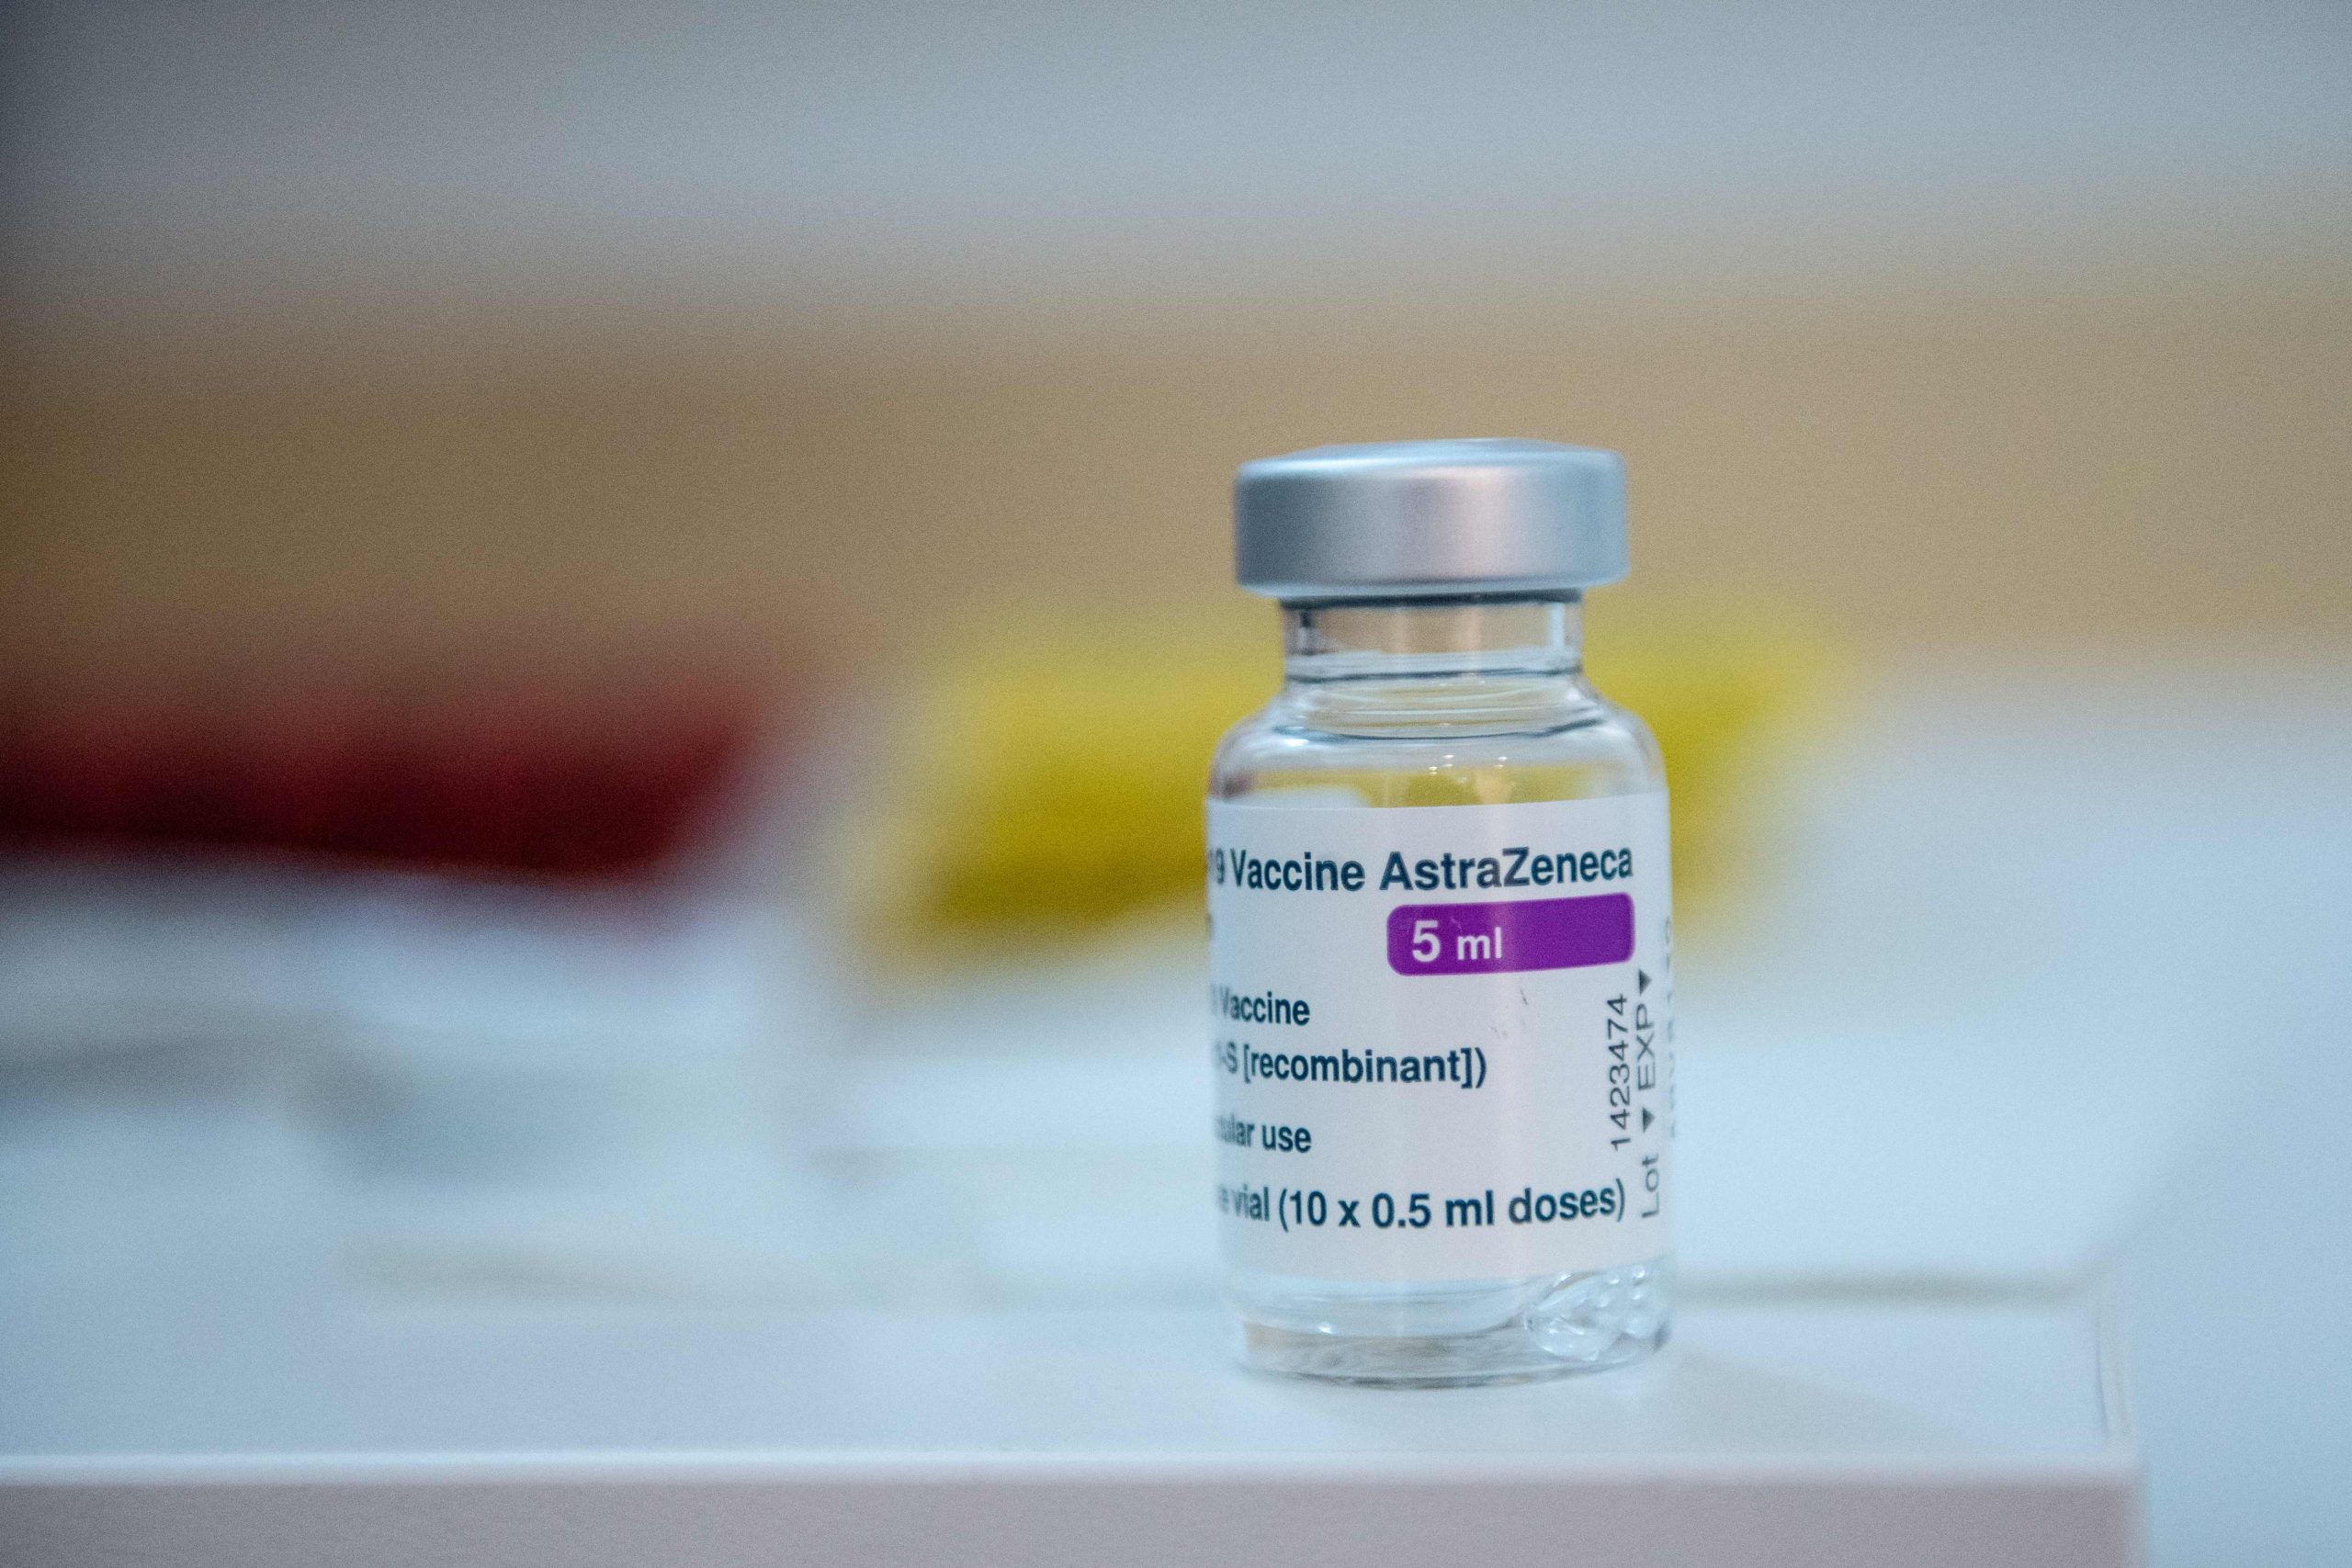 Austrália desperdiça mais de 30 mil doses da vacina da AstraZeneca em fim de prazo de validade